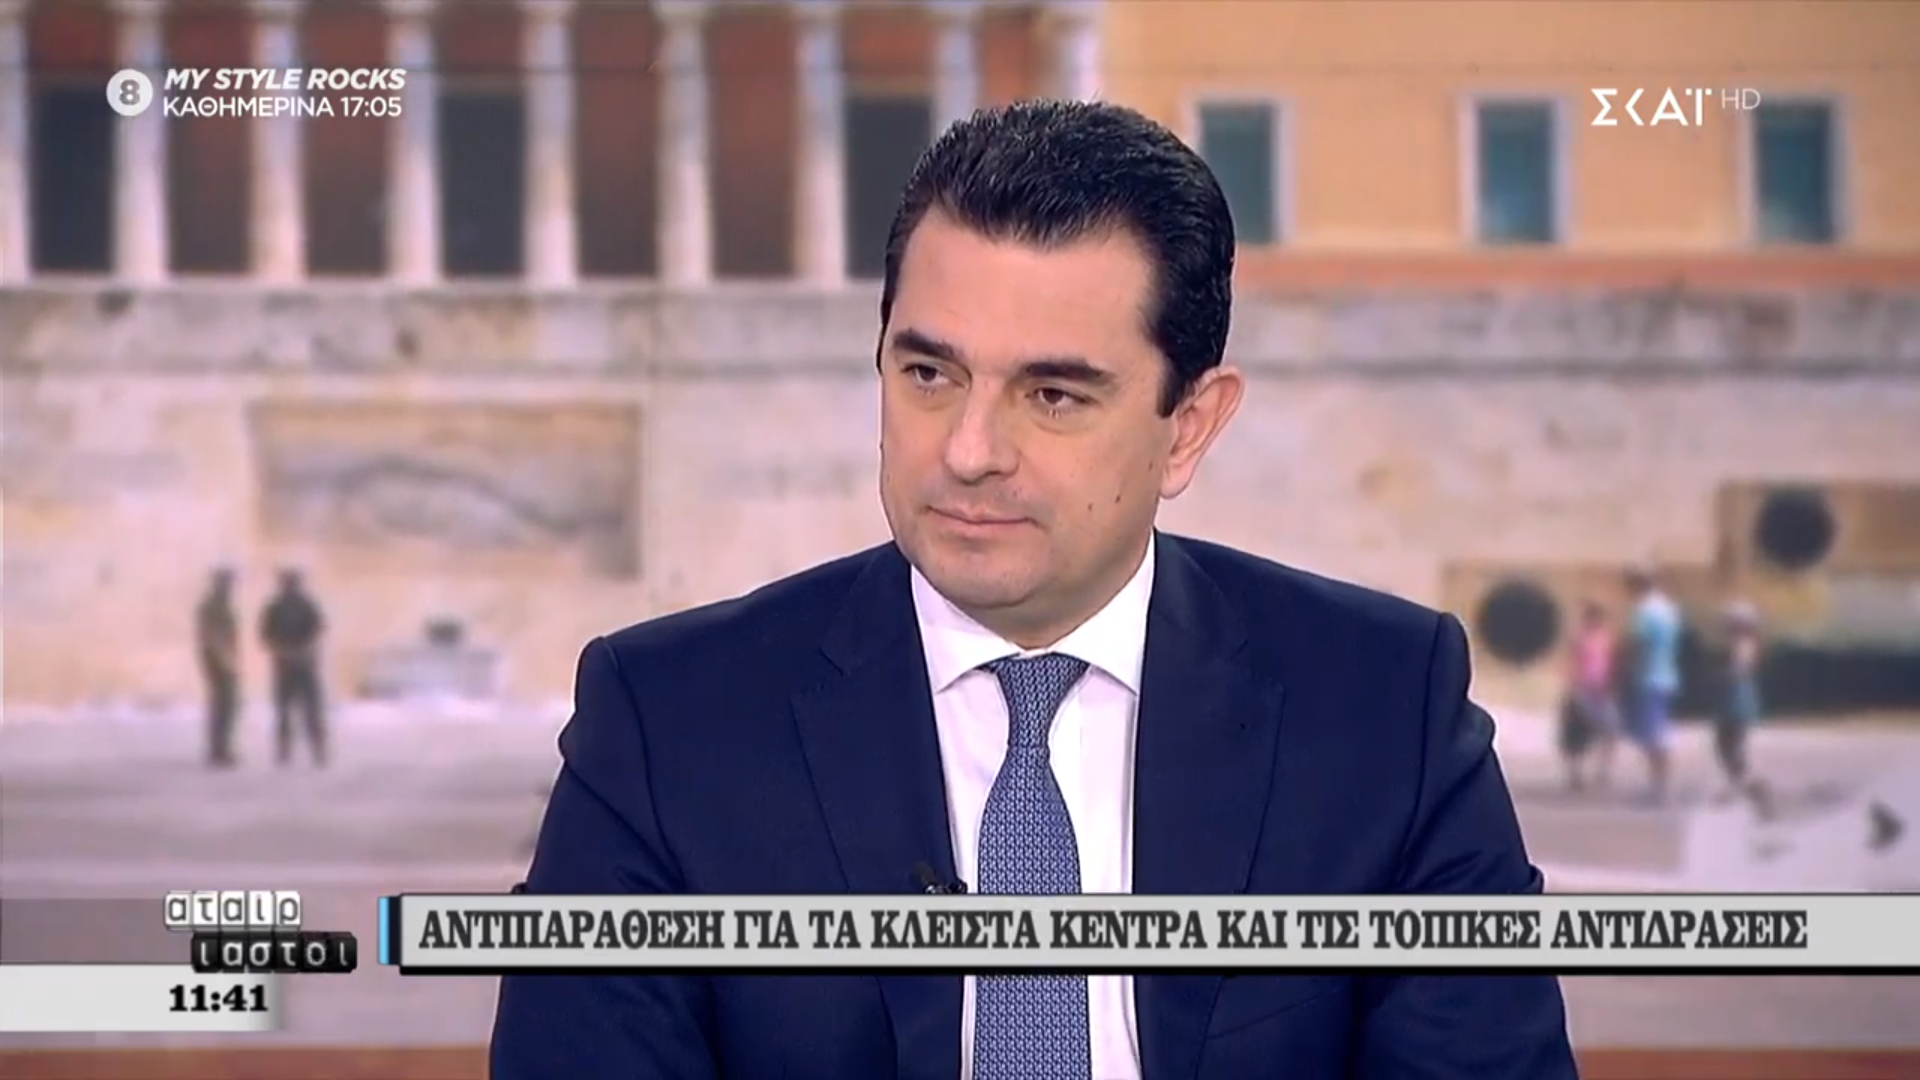 Κ. Σκρέκας: "H Ελλάδα θα γίνει ξανά μια κανονική χώρα με σεβασμό στη νομιμότητα και το κράτος δικαίου"